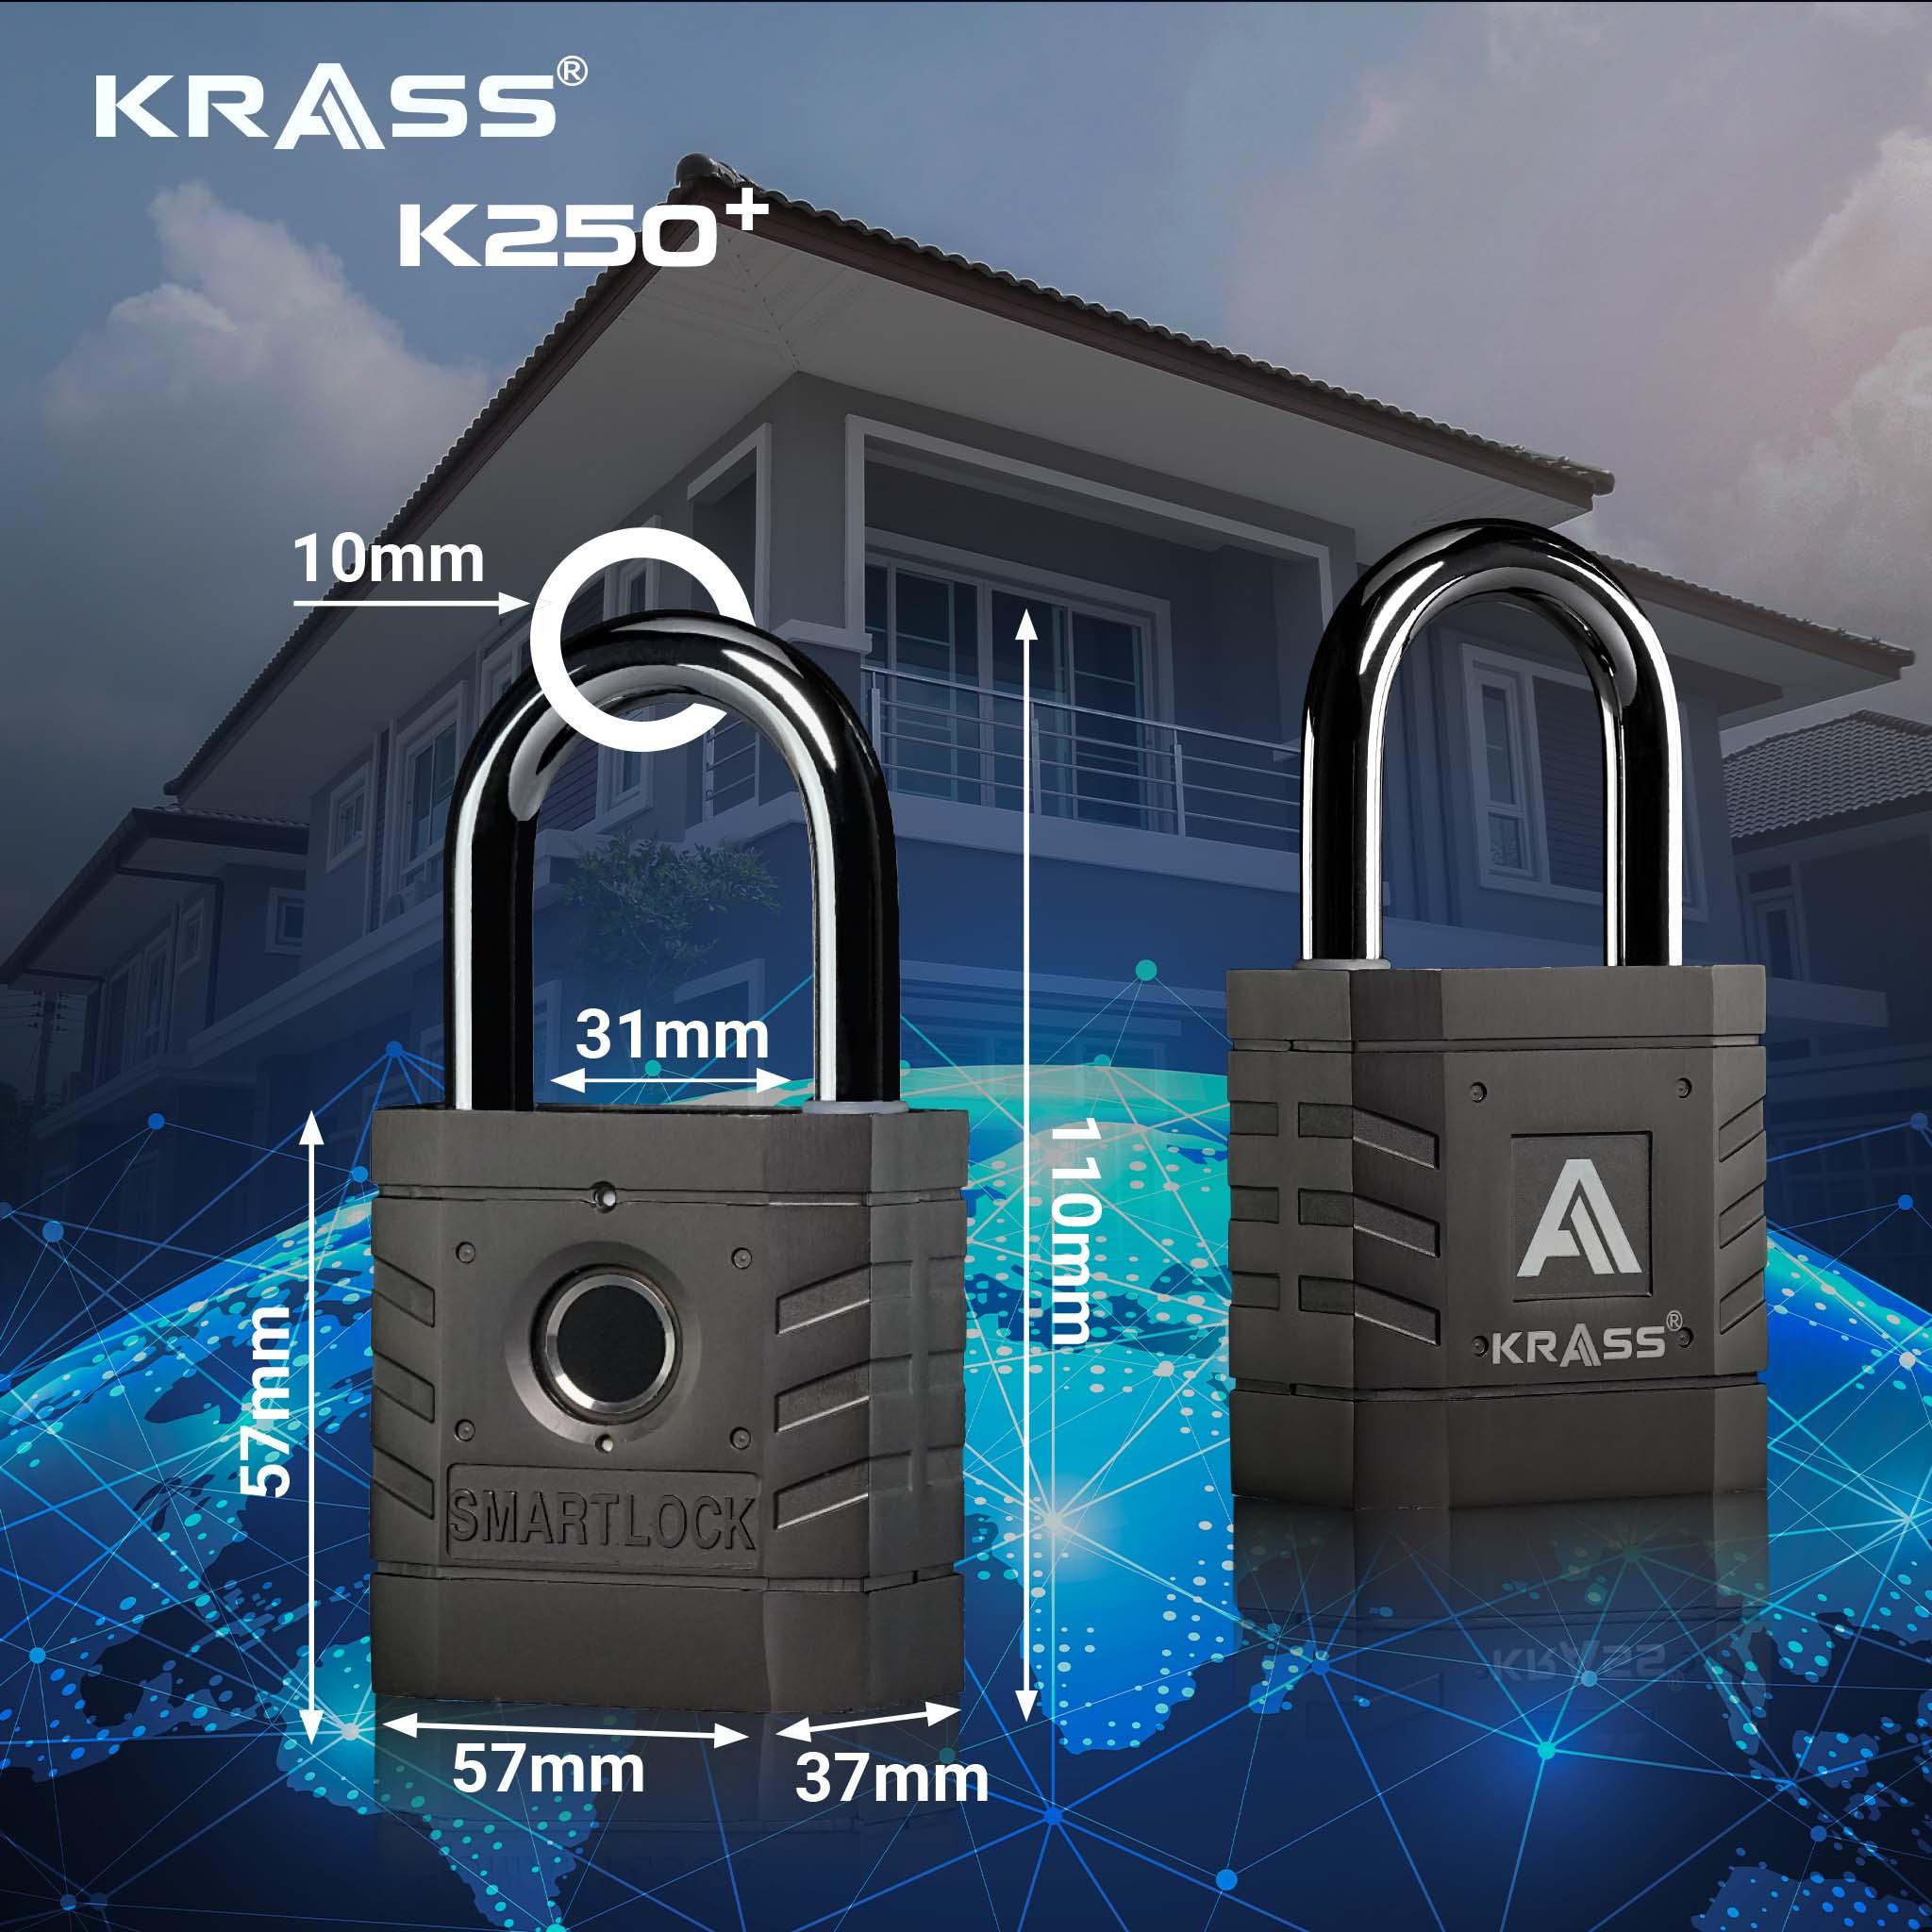 Khóa Krass K250 Plus - Đột phá công nghệ Đức về bảo mật vân tay - 2